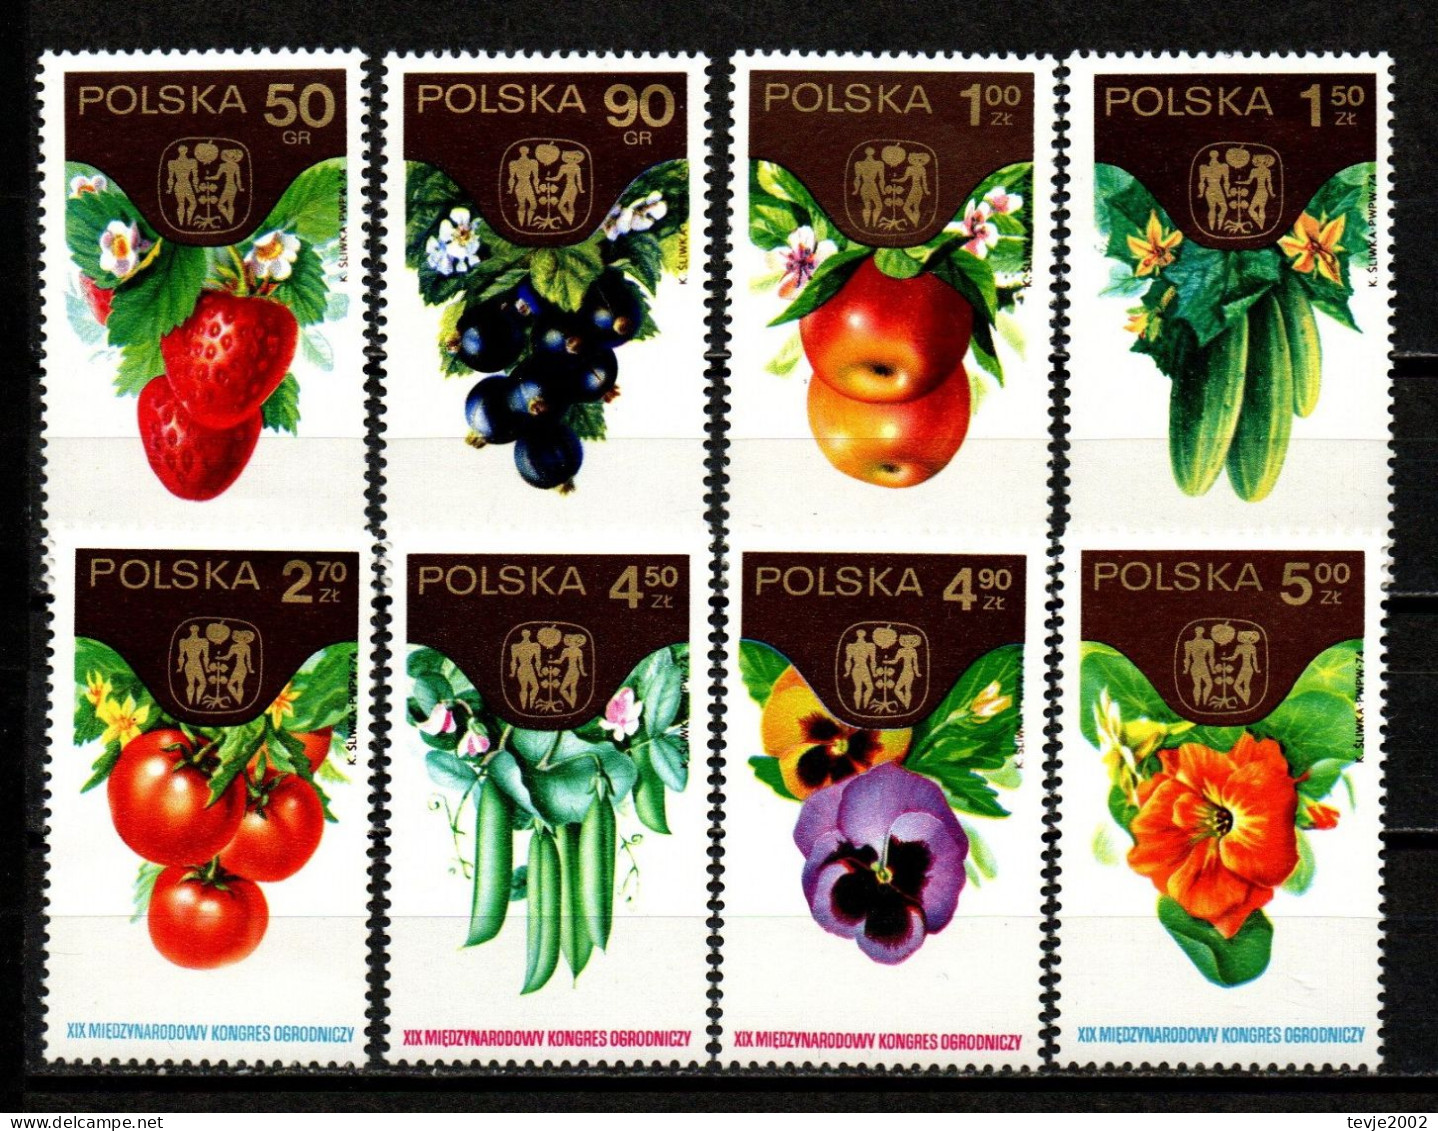 Polen 1974 - Mi.Nr. 2329 - 2336 - Postfrisch MNH - Gemüse Vegetable Obst Fruits - Groenten